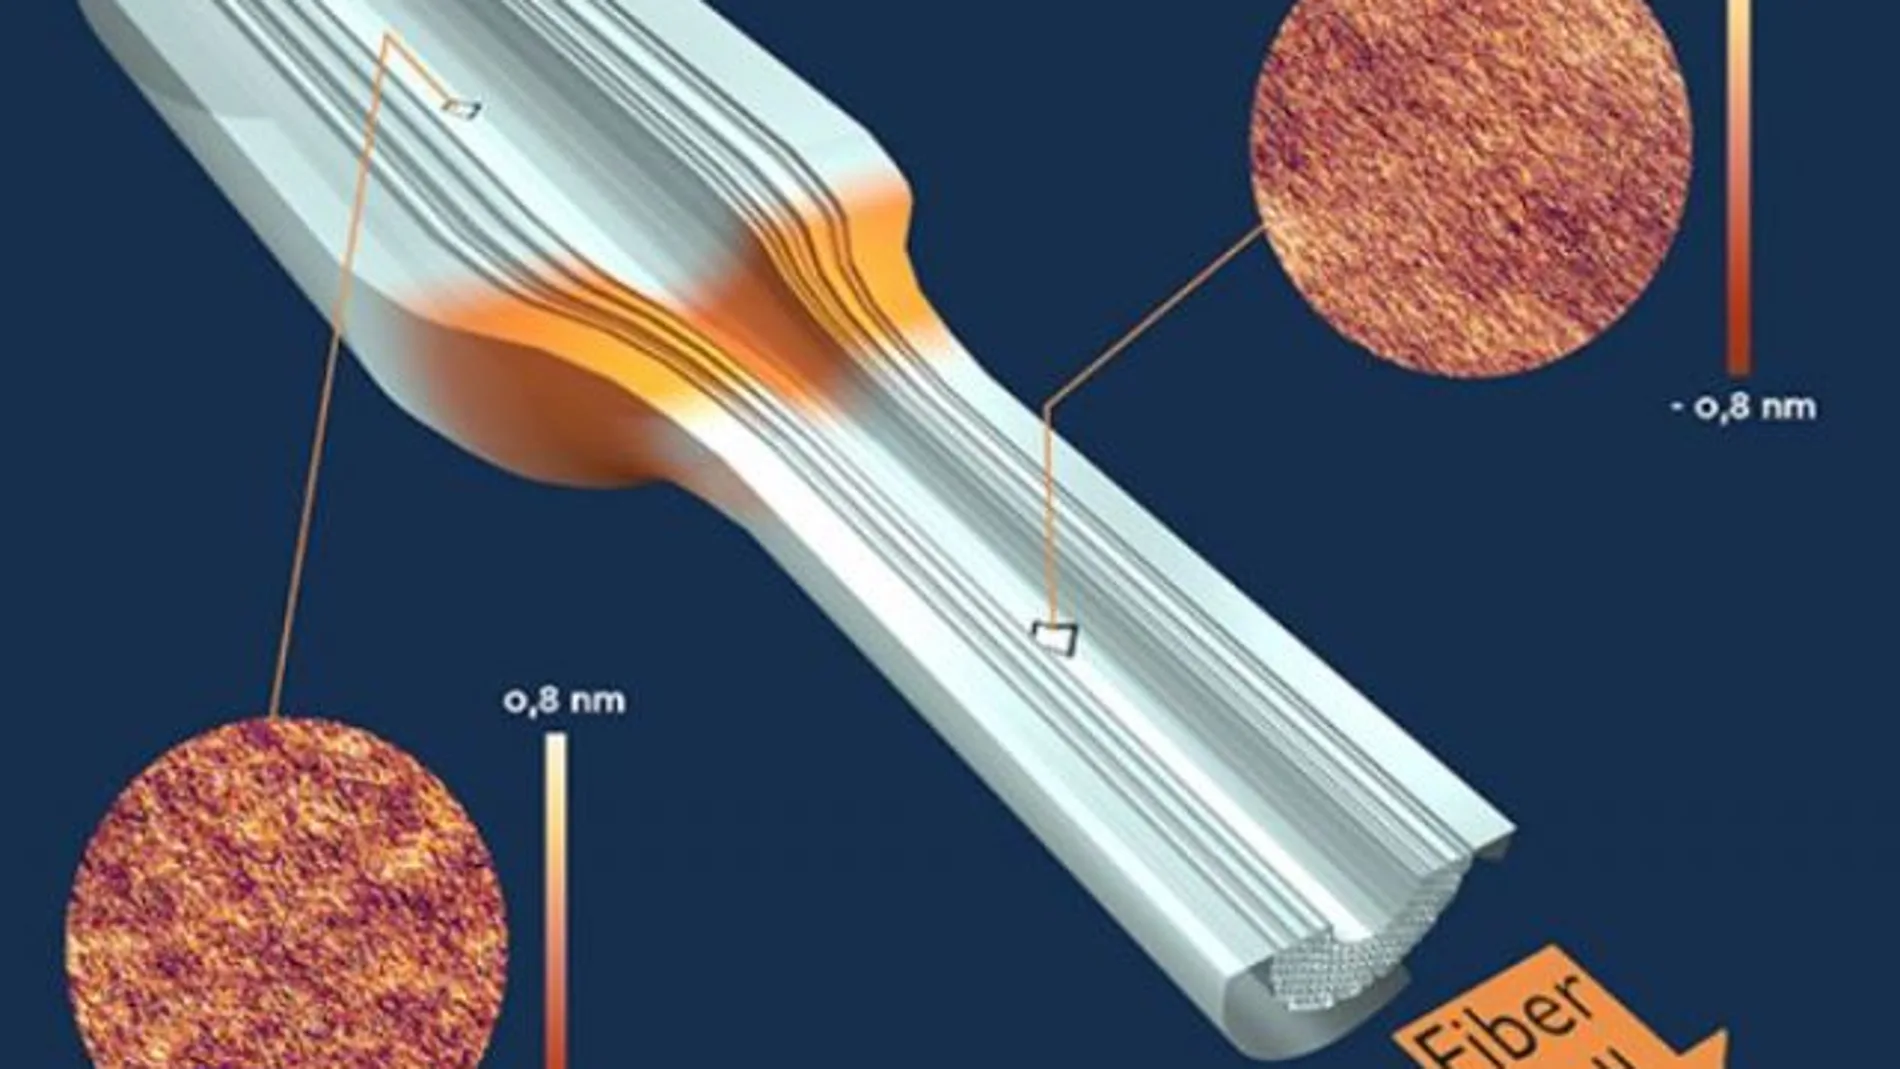 Esquema del principio de estiramiento de una fibra óptica de cristal fotónico con dos imágenes del microscopio de fuerza atómica mostrando la rugosidad anisótropa antes y después de la zona de estiramiento por alta temperatura